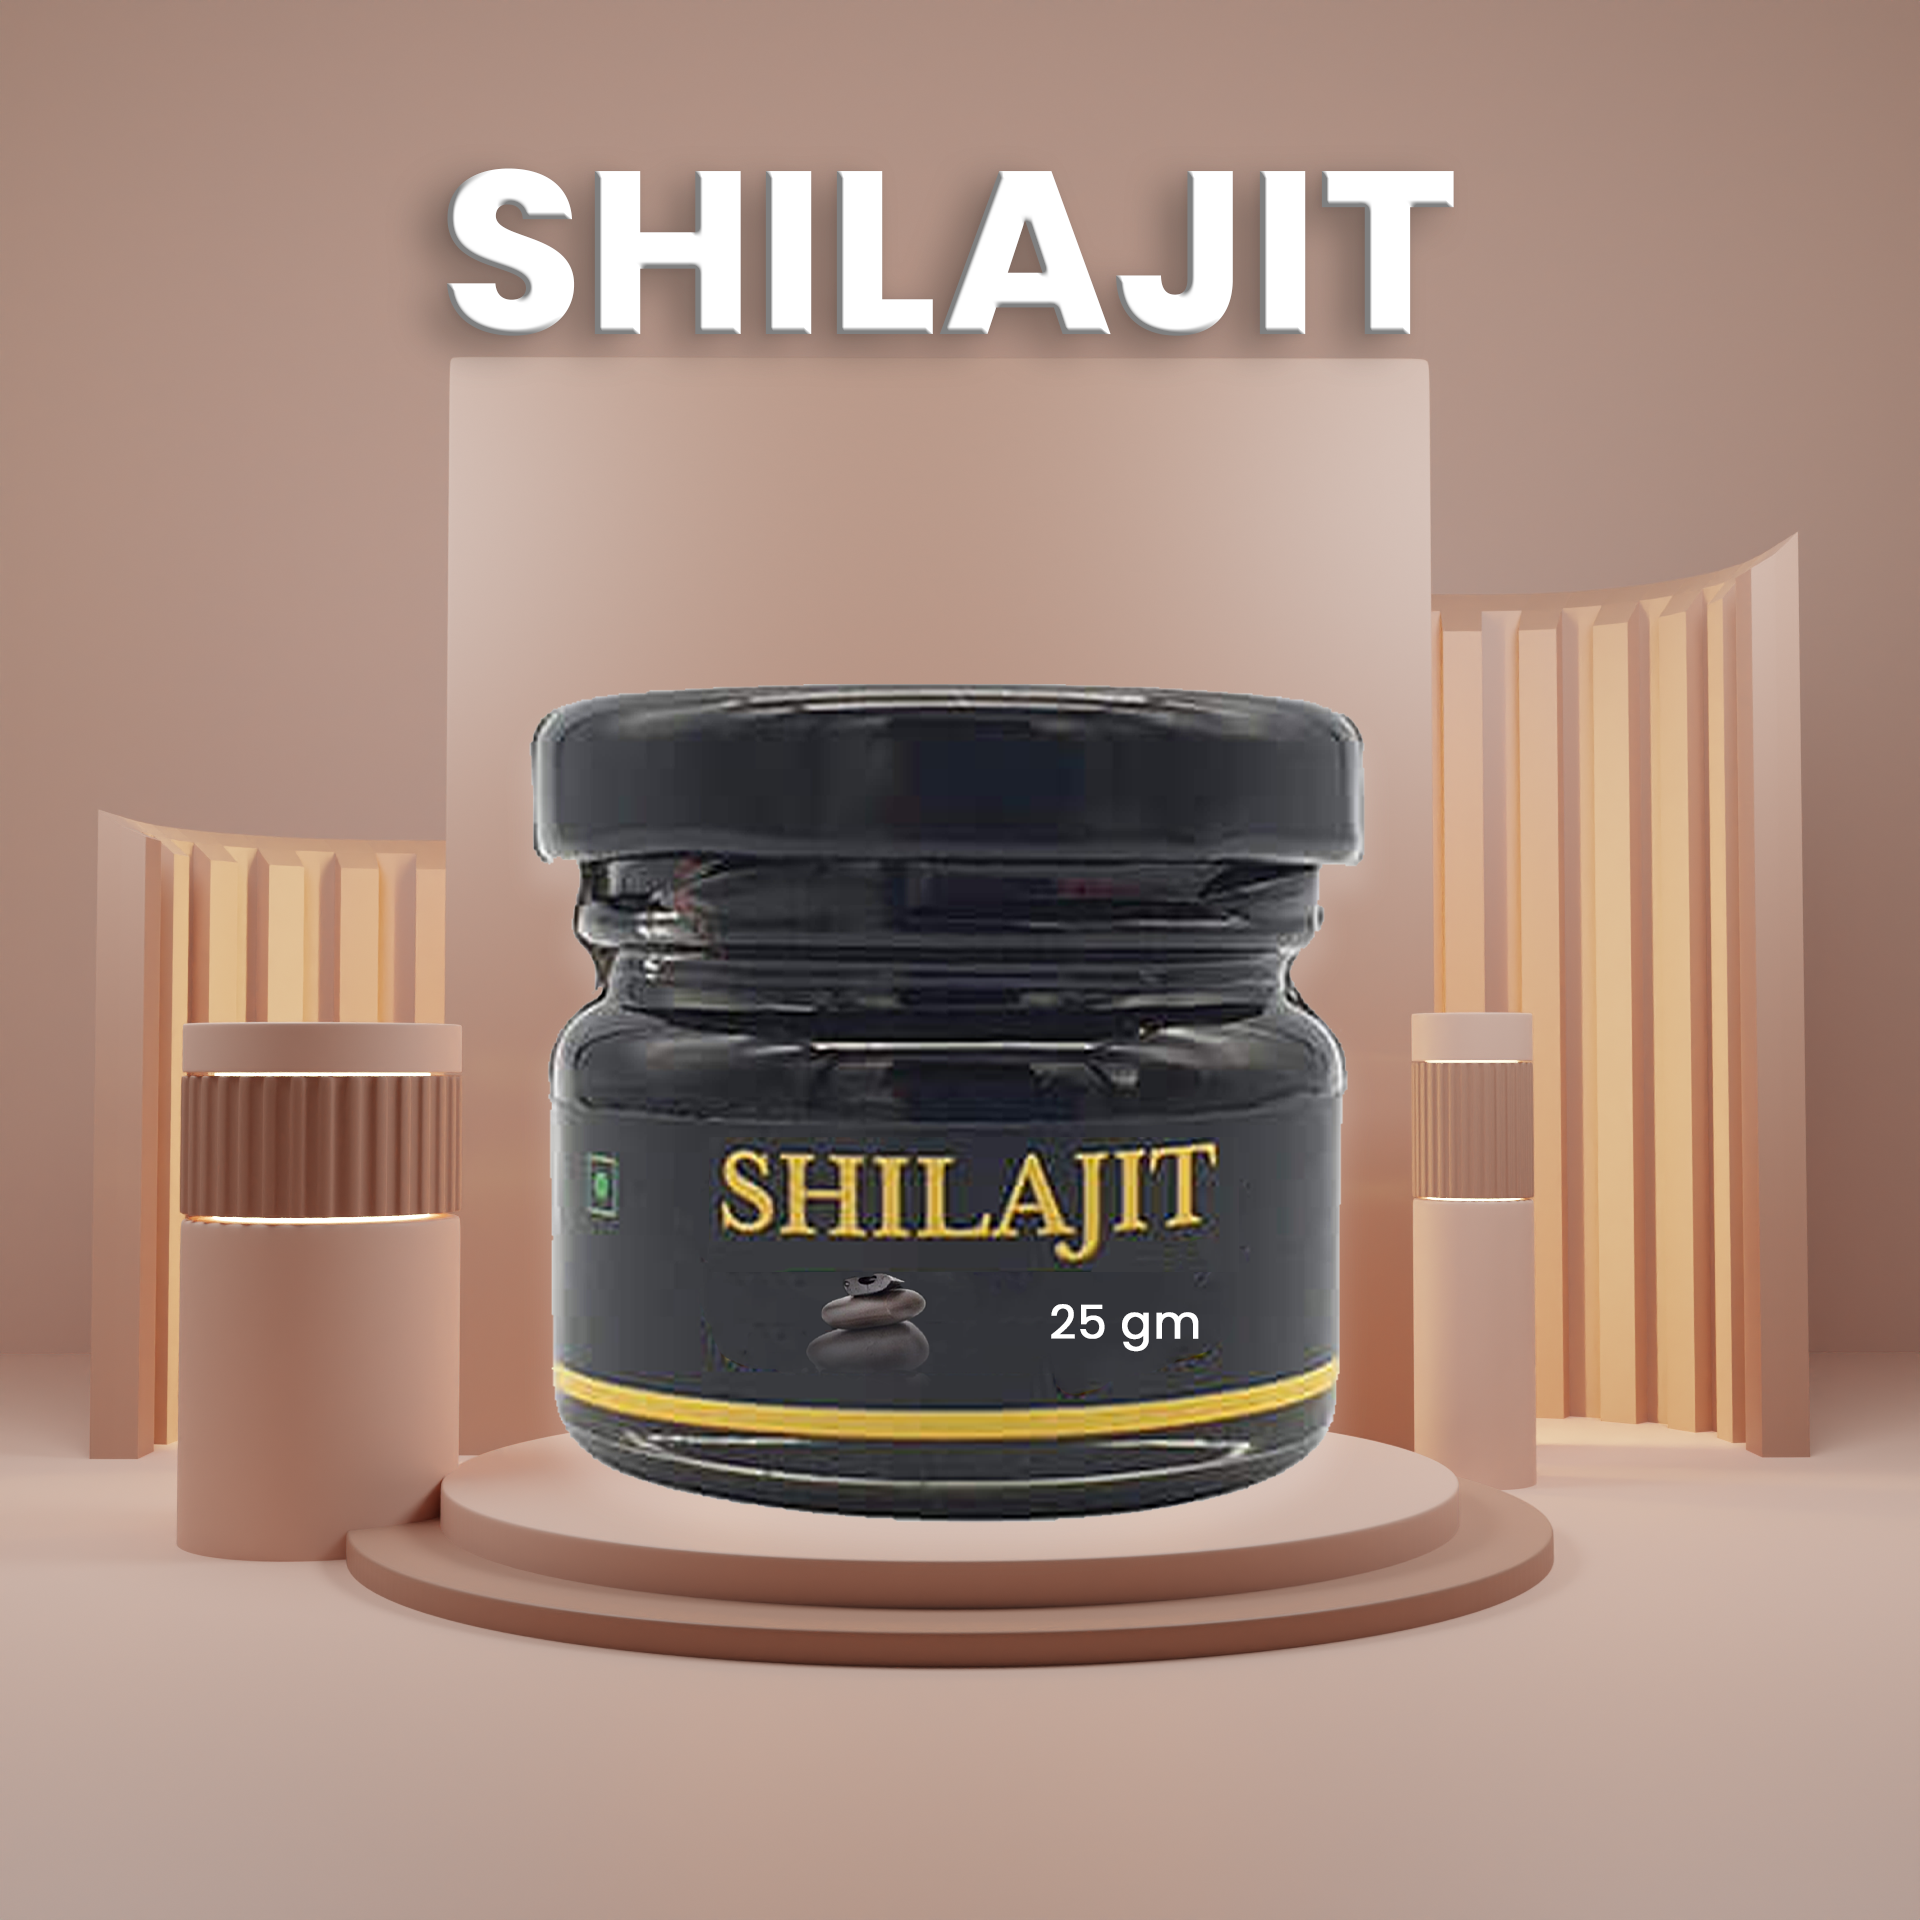 Shilajit